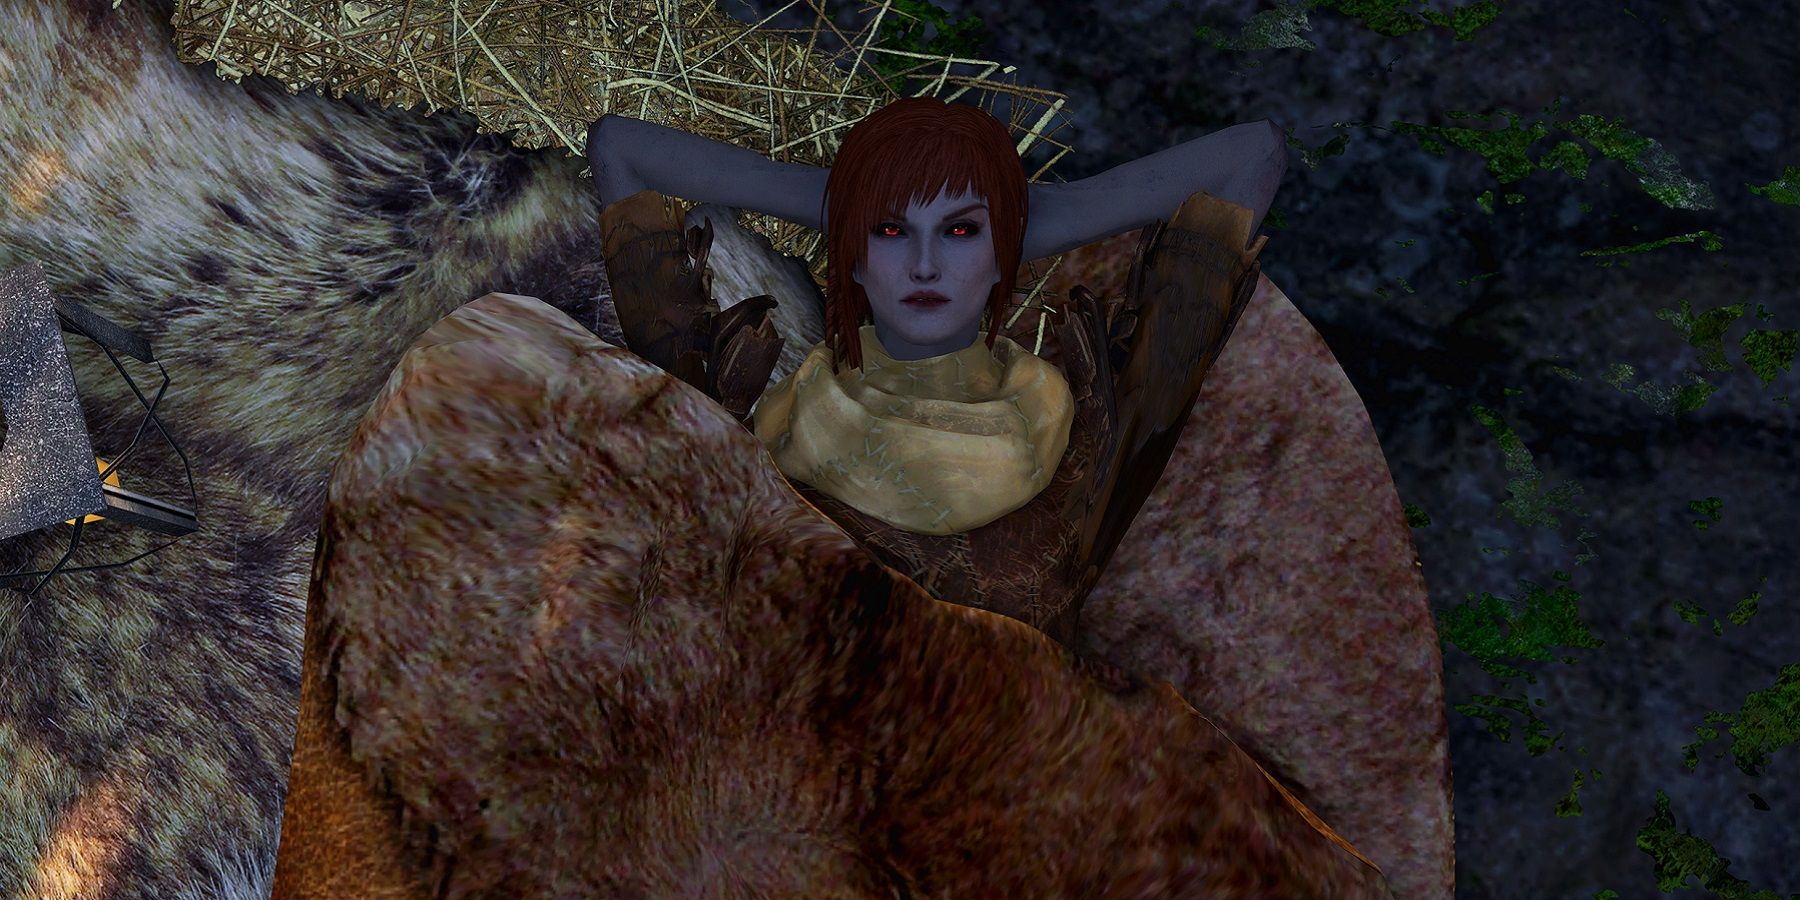 Изображение из Skyrim, показывающее персонажа, удобно лежащего в скатке.